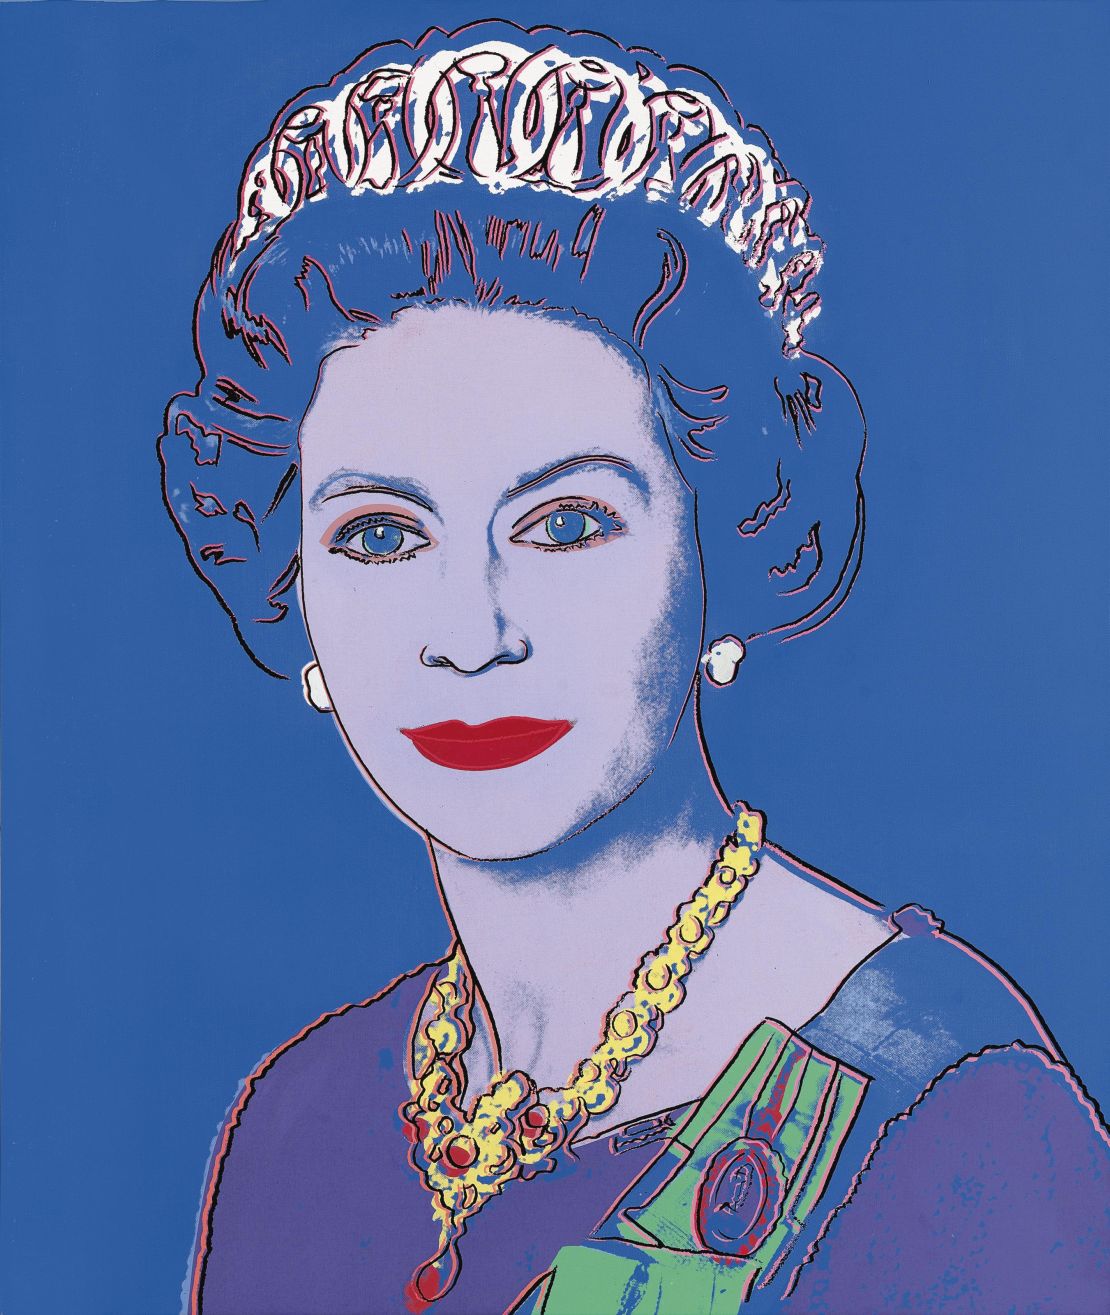 Andy Warhol's 1985 "Reigning Queens" portrait of Elizabeth II.